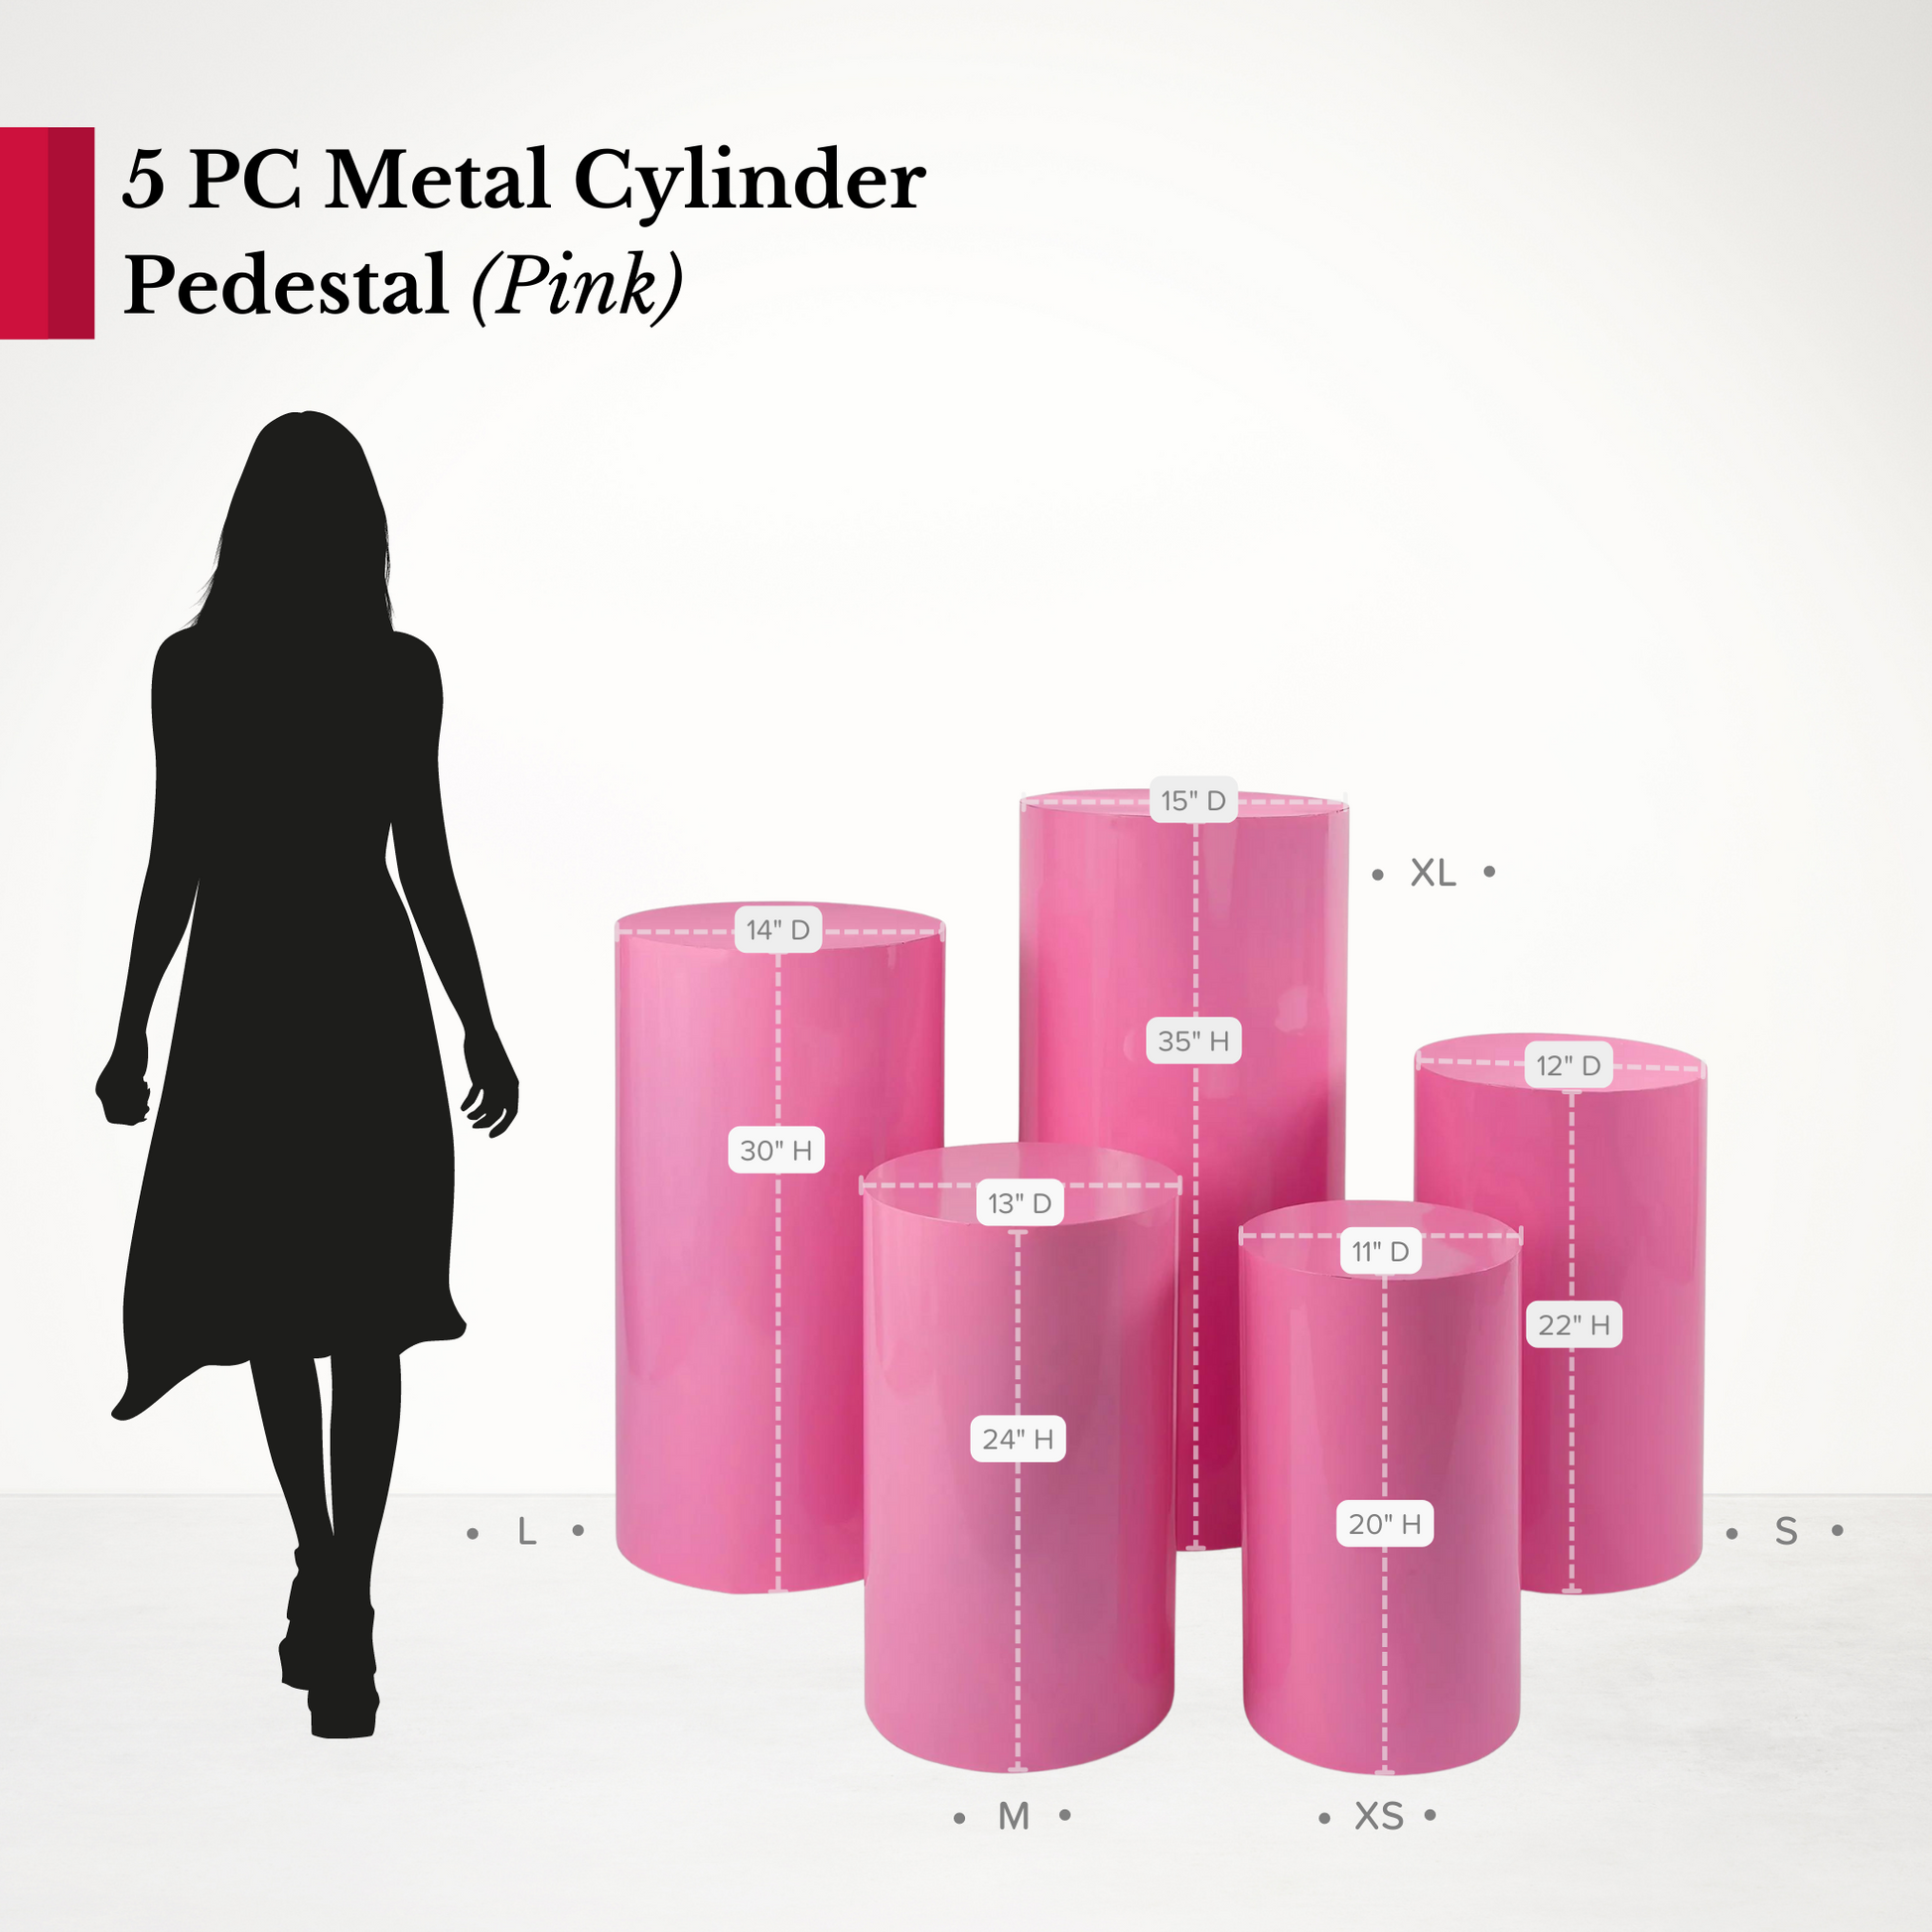 Metal Cylinder Pedestal Display Stands 5 pcs/set - Pink